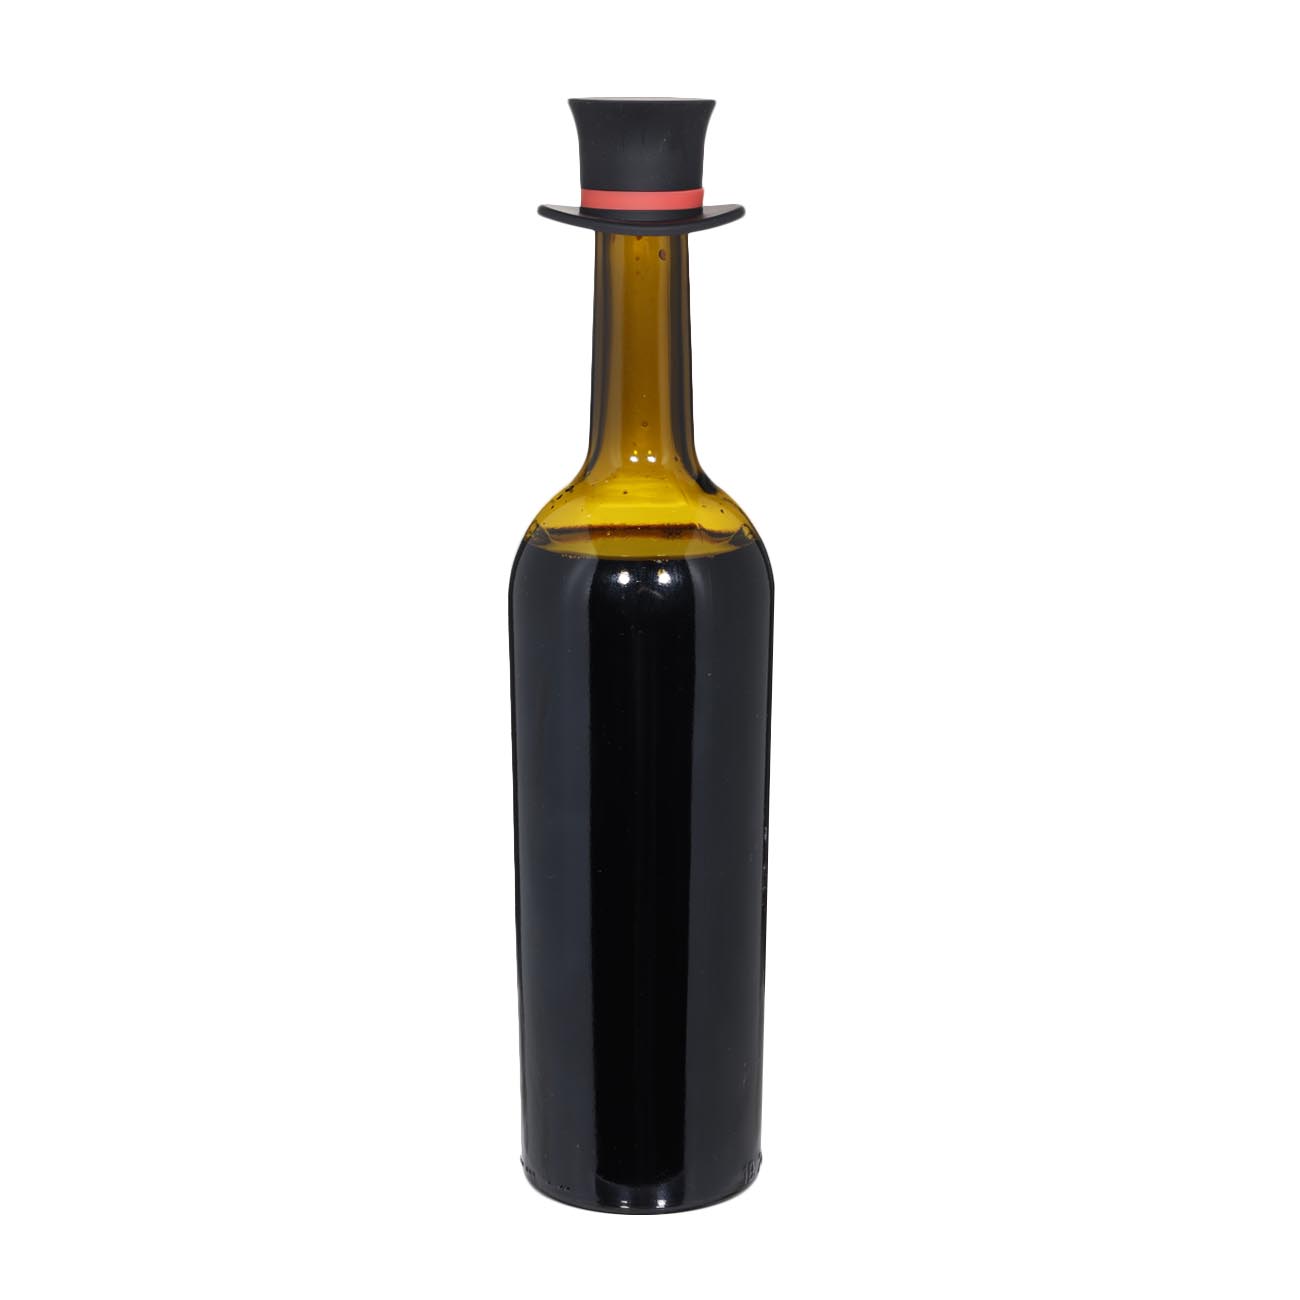 Пробка для винной бутылки, 6 см, в ассортименте, силикон, синяя/черная, Шляпа, Manny изображение № 2